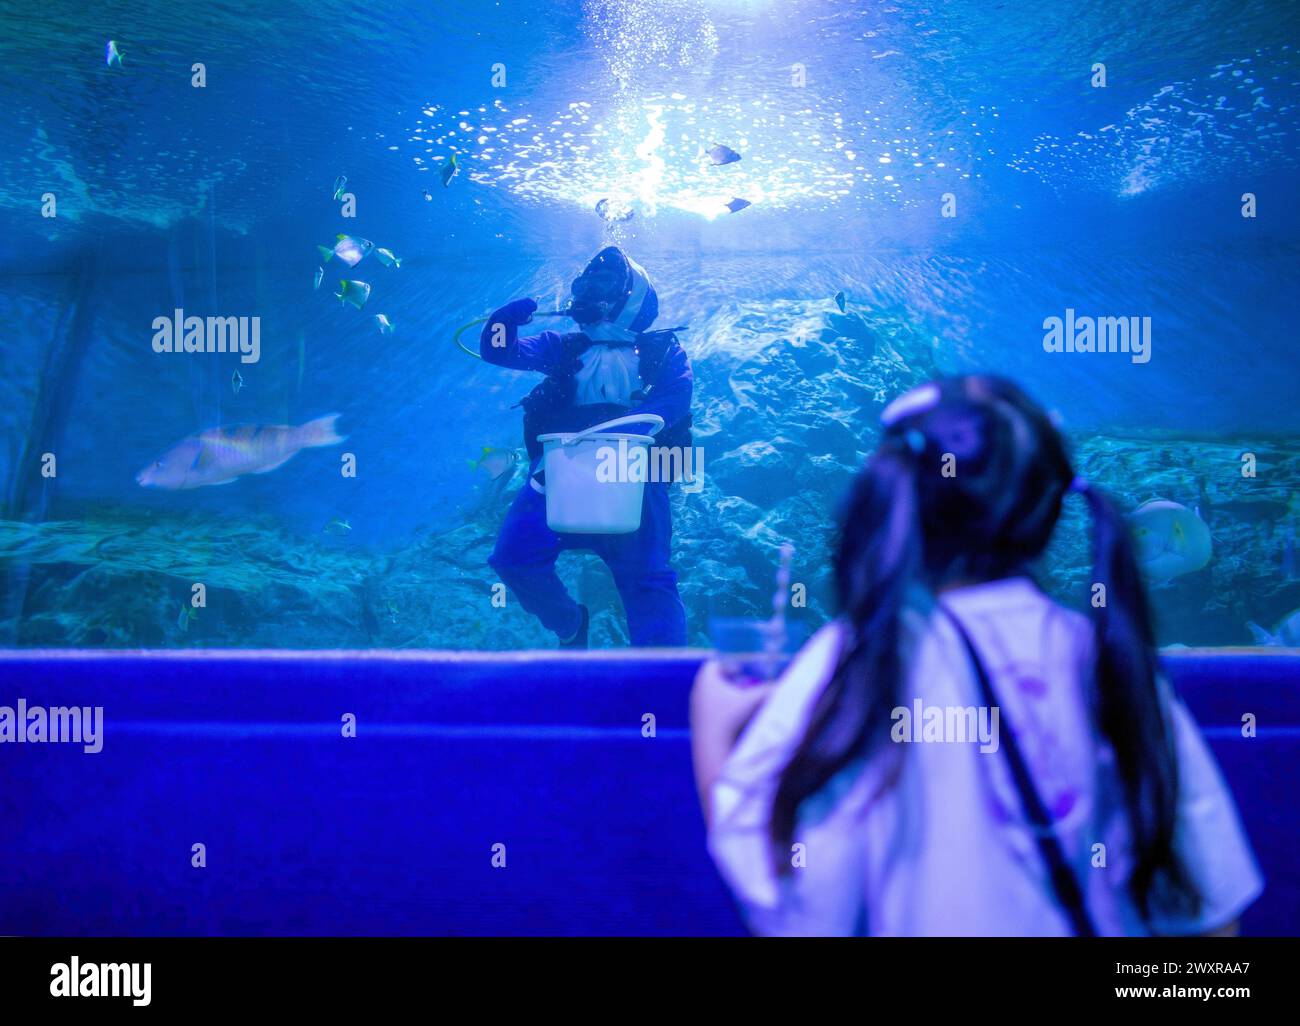 Una niña mira a un buceador tailandés alimentando a varios peces para celebrar la apertura del Zoo Aquarium de Chiang Mai, en Chiang Mai. El acuario del zoológico de Chiang Mai hay un túnel subterráneo en el edificio que es un túnel de agua dulce y un túnel de mar y está conectado entre sí por camino de auto-caminar y es el más largo en el sudeste de Asia y la longitud total es de 133 metros. La longitud del túnel de mar es de 66,5 metros y el túnel de agua dulce es de 66,5 metros. El acuario zoológico de Chiang Mai reabrió sus puertas a los turistas el 1 de abril después de más de un año de renovación, se hizo una inversión de casi 30 millones de baht para reacondicionar Foto de stock